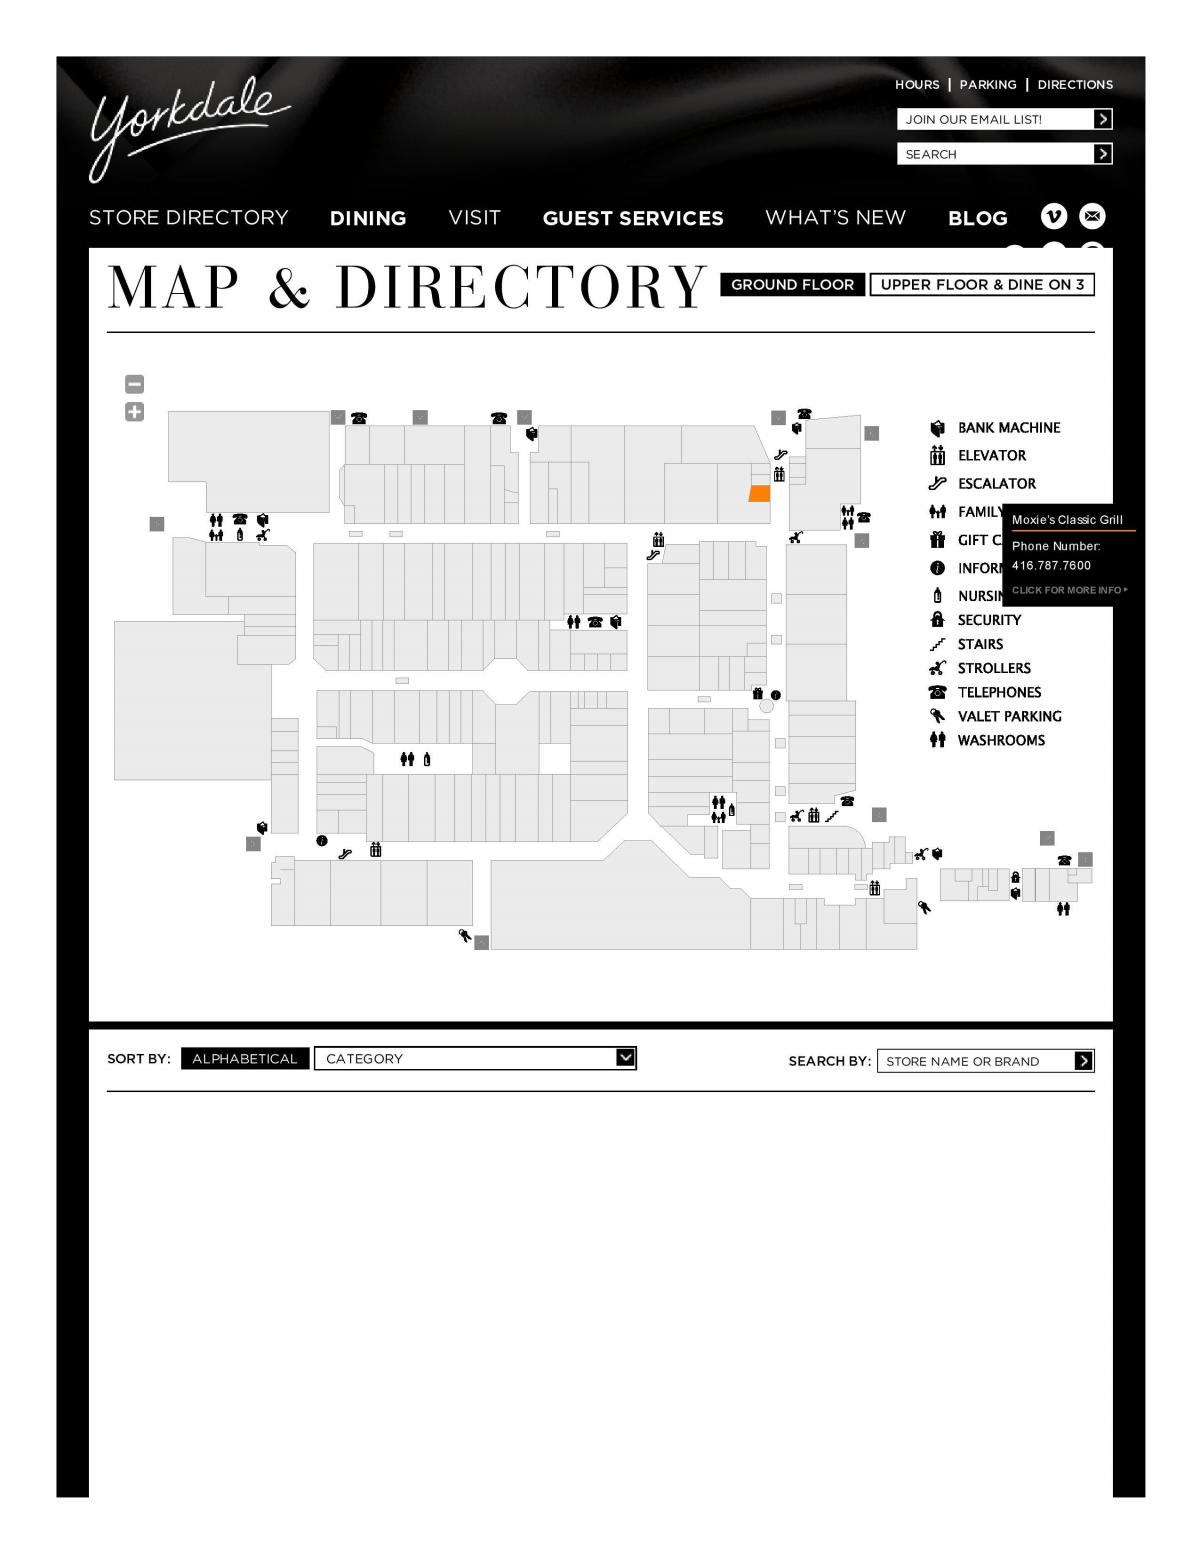 Peta dari Pusat Perbelanjaan Yorkdale